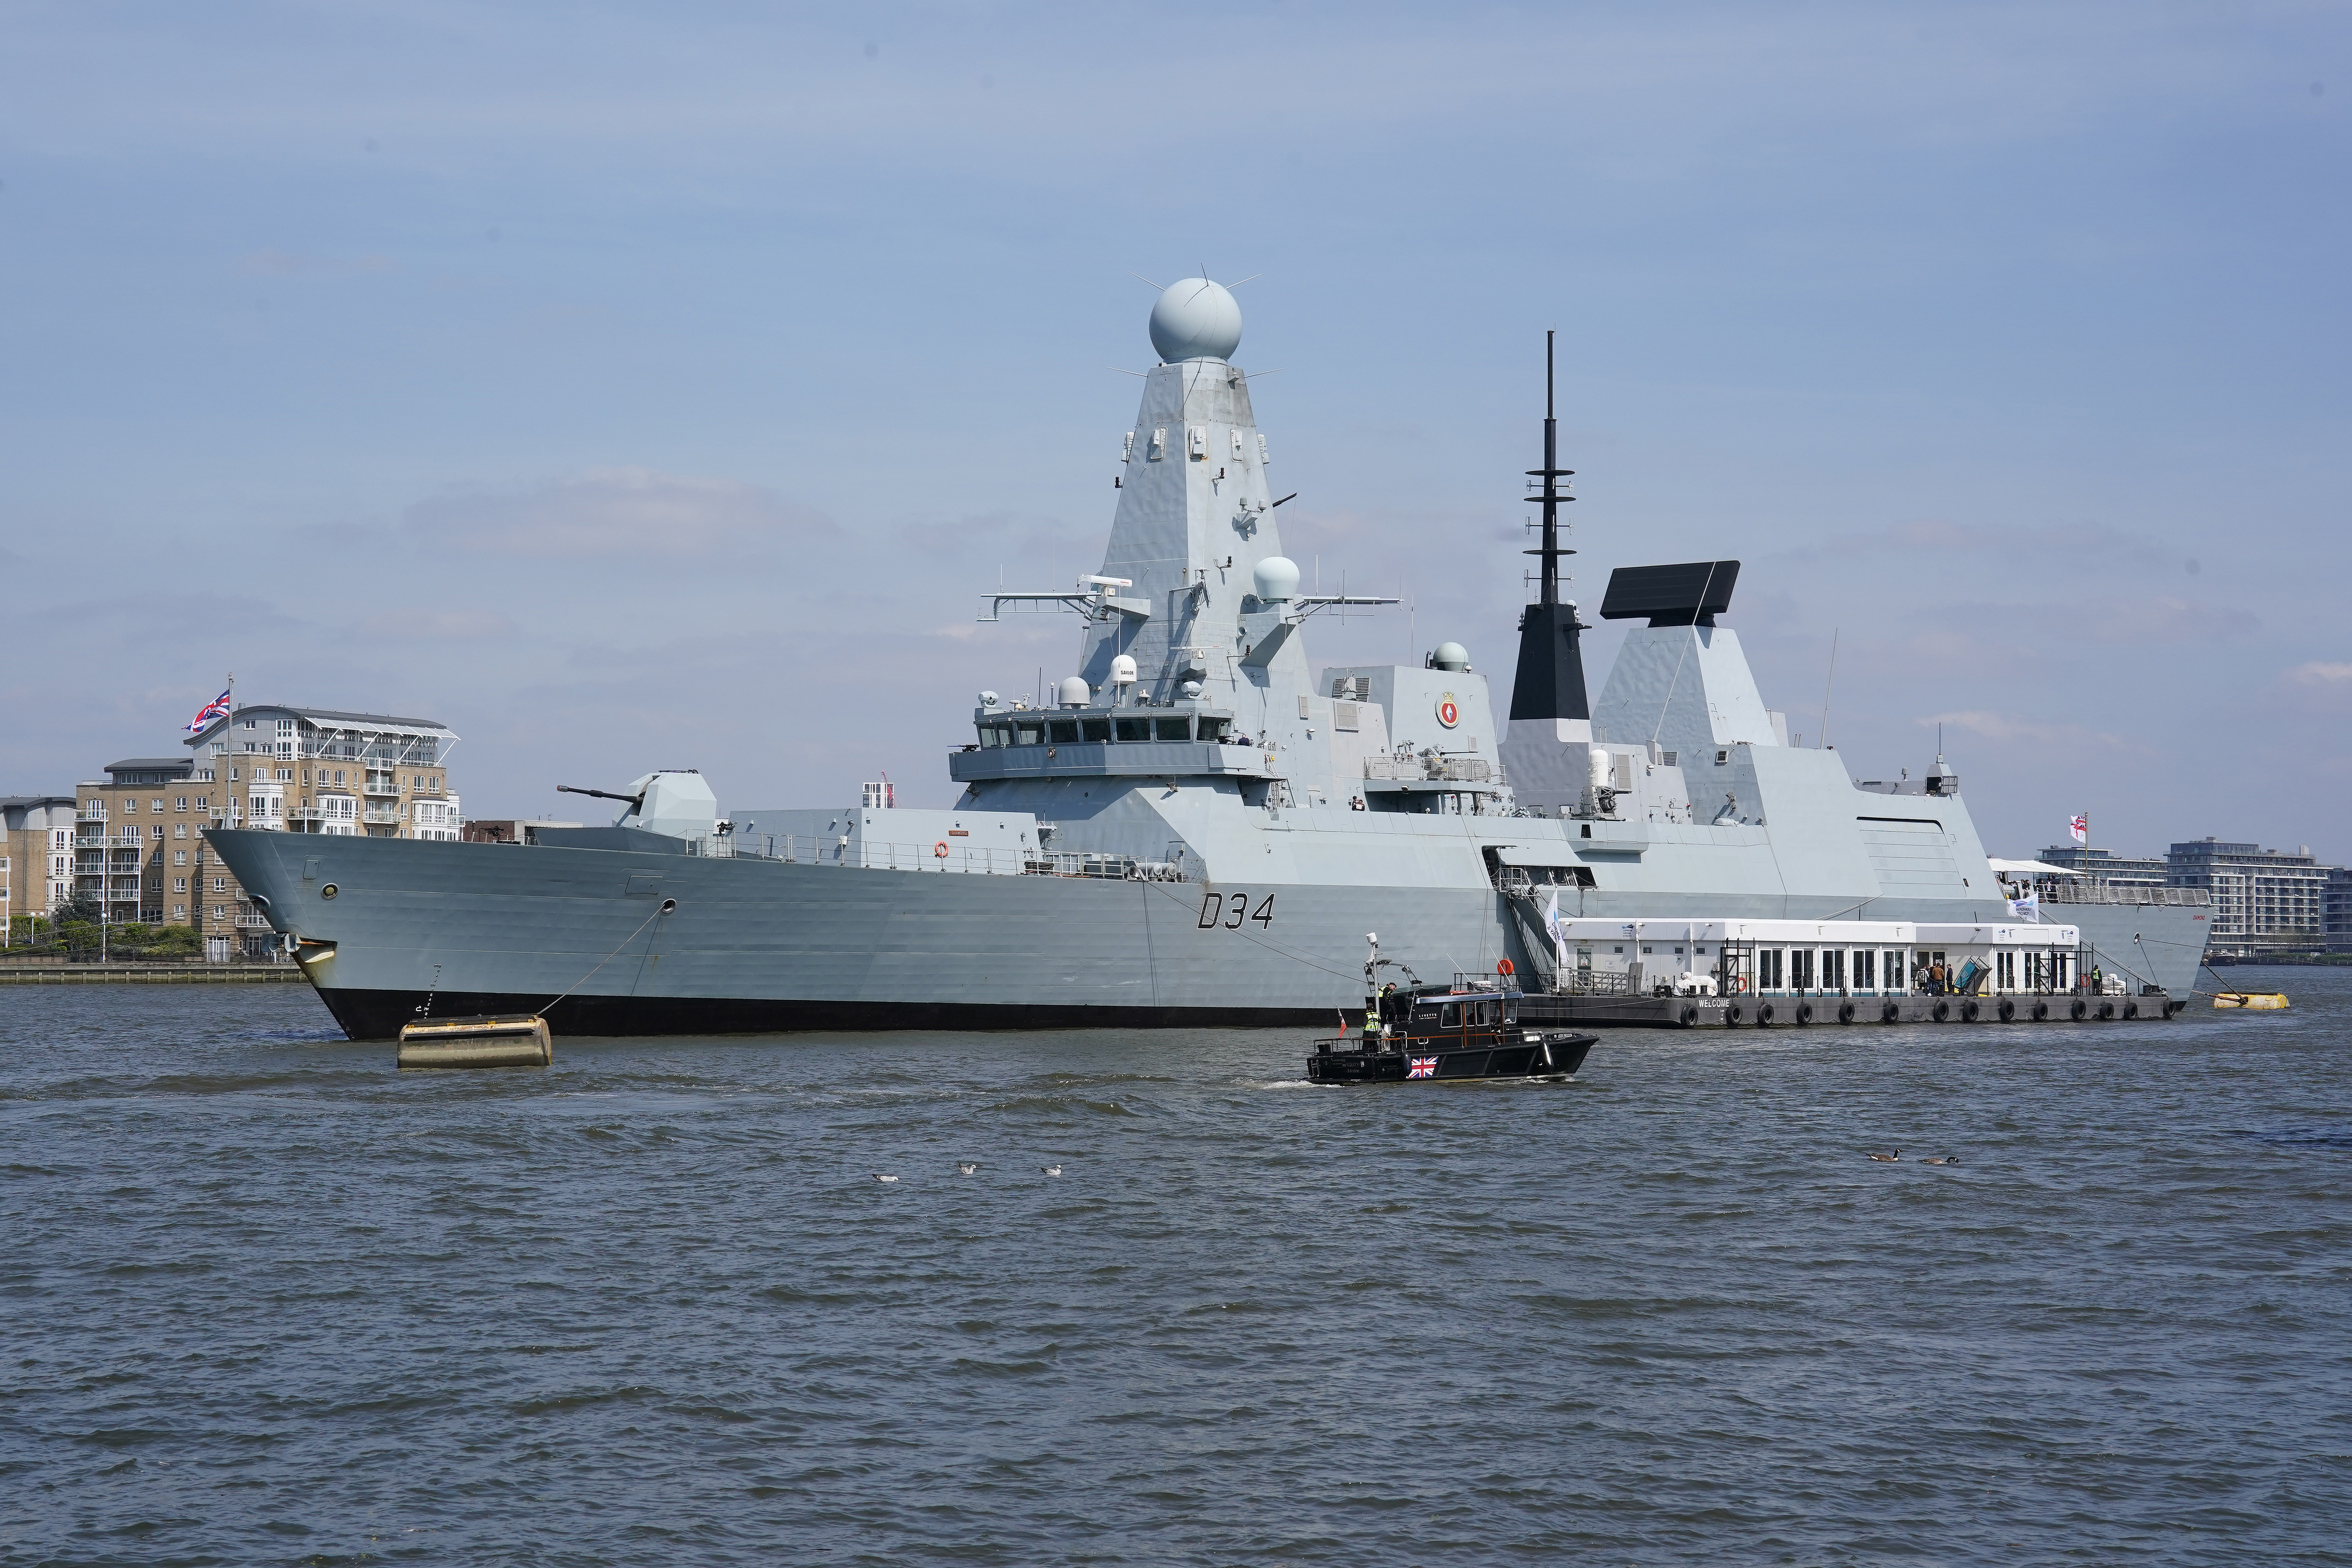 Die HMS Diamond, die im Bild an der Themse in Greenwich liegt, wurde ebenfalls im Nahen Osten eingesetzt